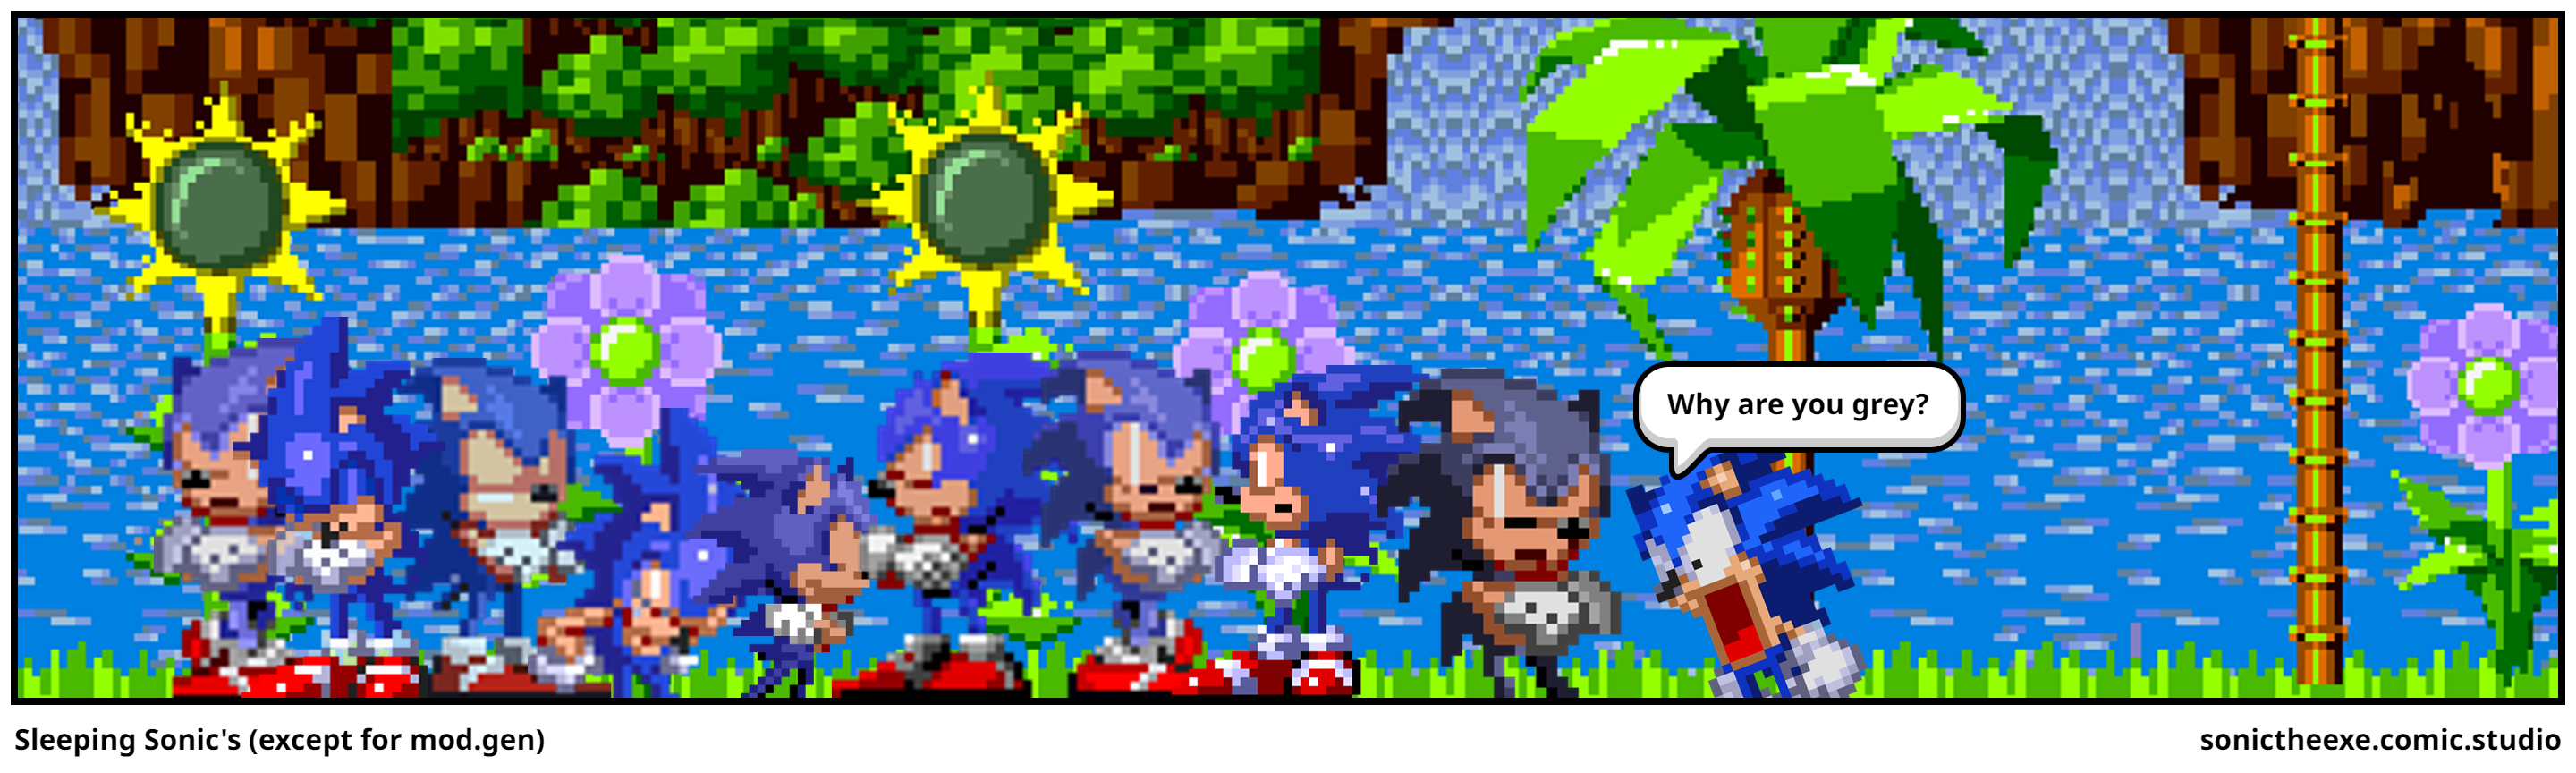 Sleeping Sonic's (except for mod.gen)